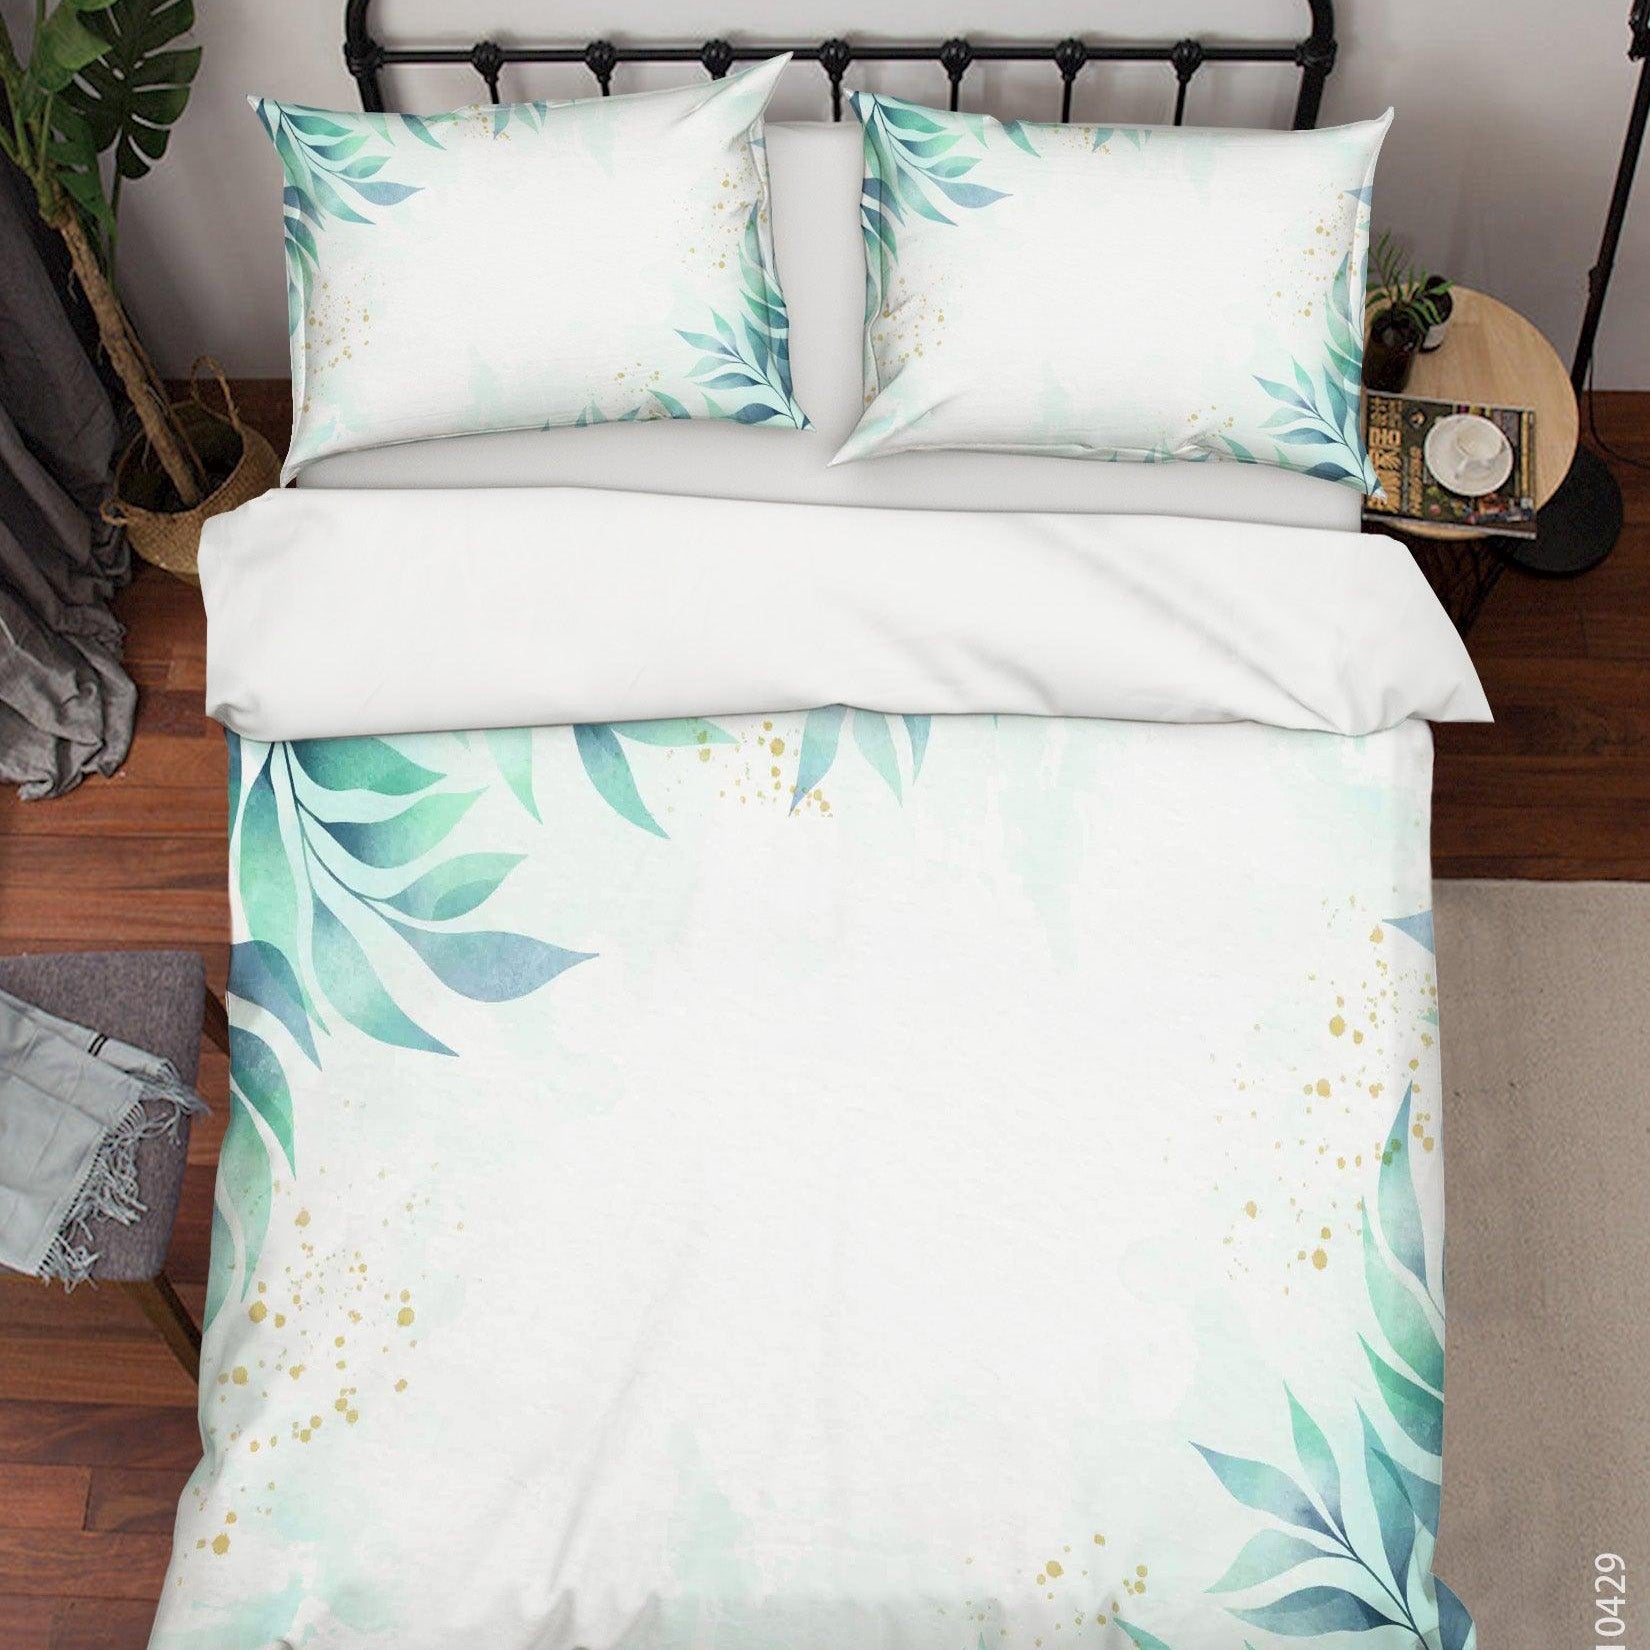 3D Watercolor Green Leaf Quilt Cover Set Bedding Set Duvet Cover Pillowcases 20- Jess Art Decoration